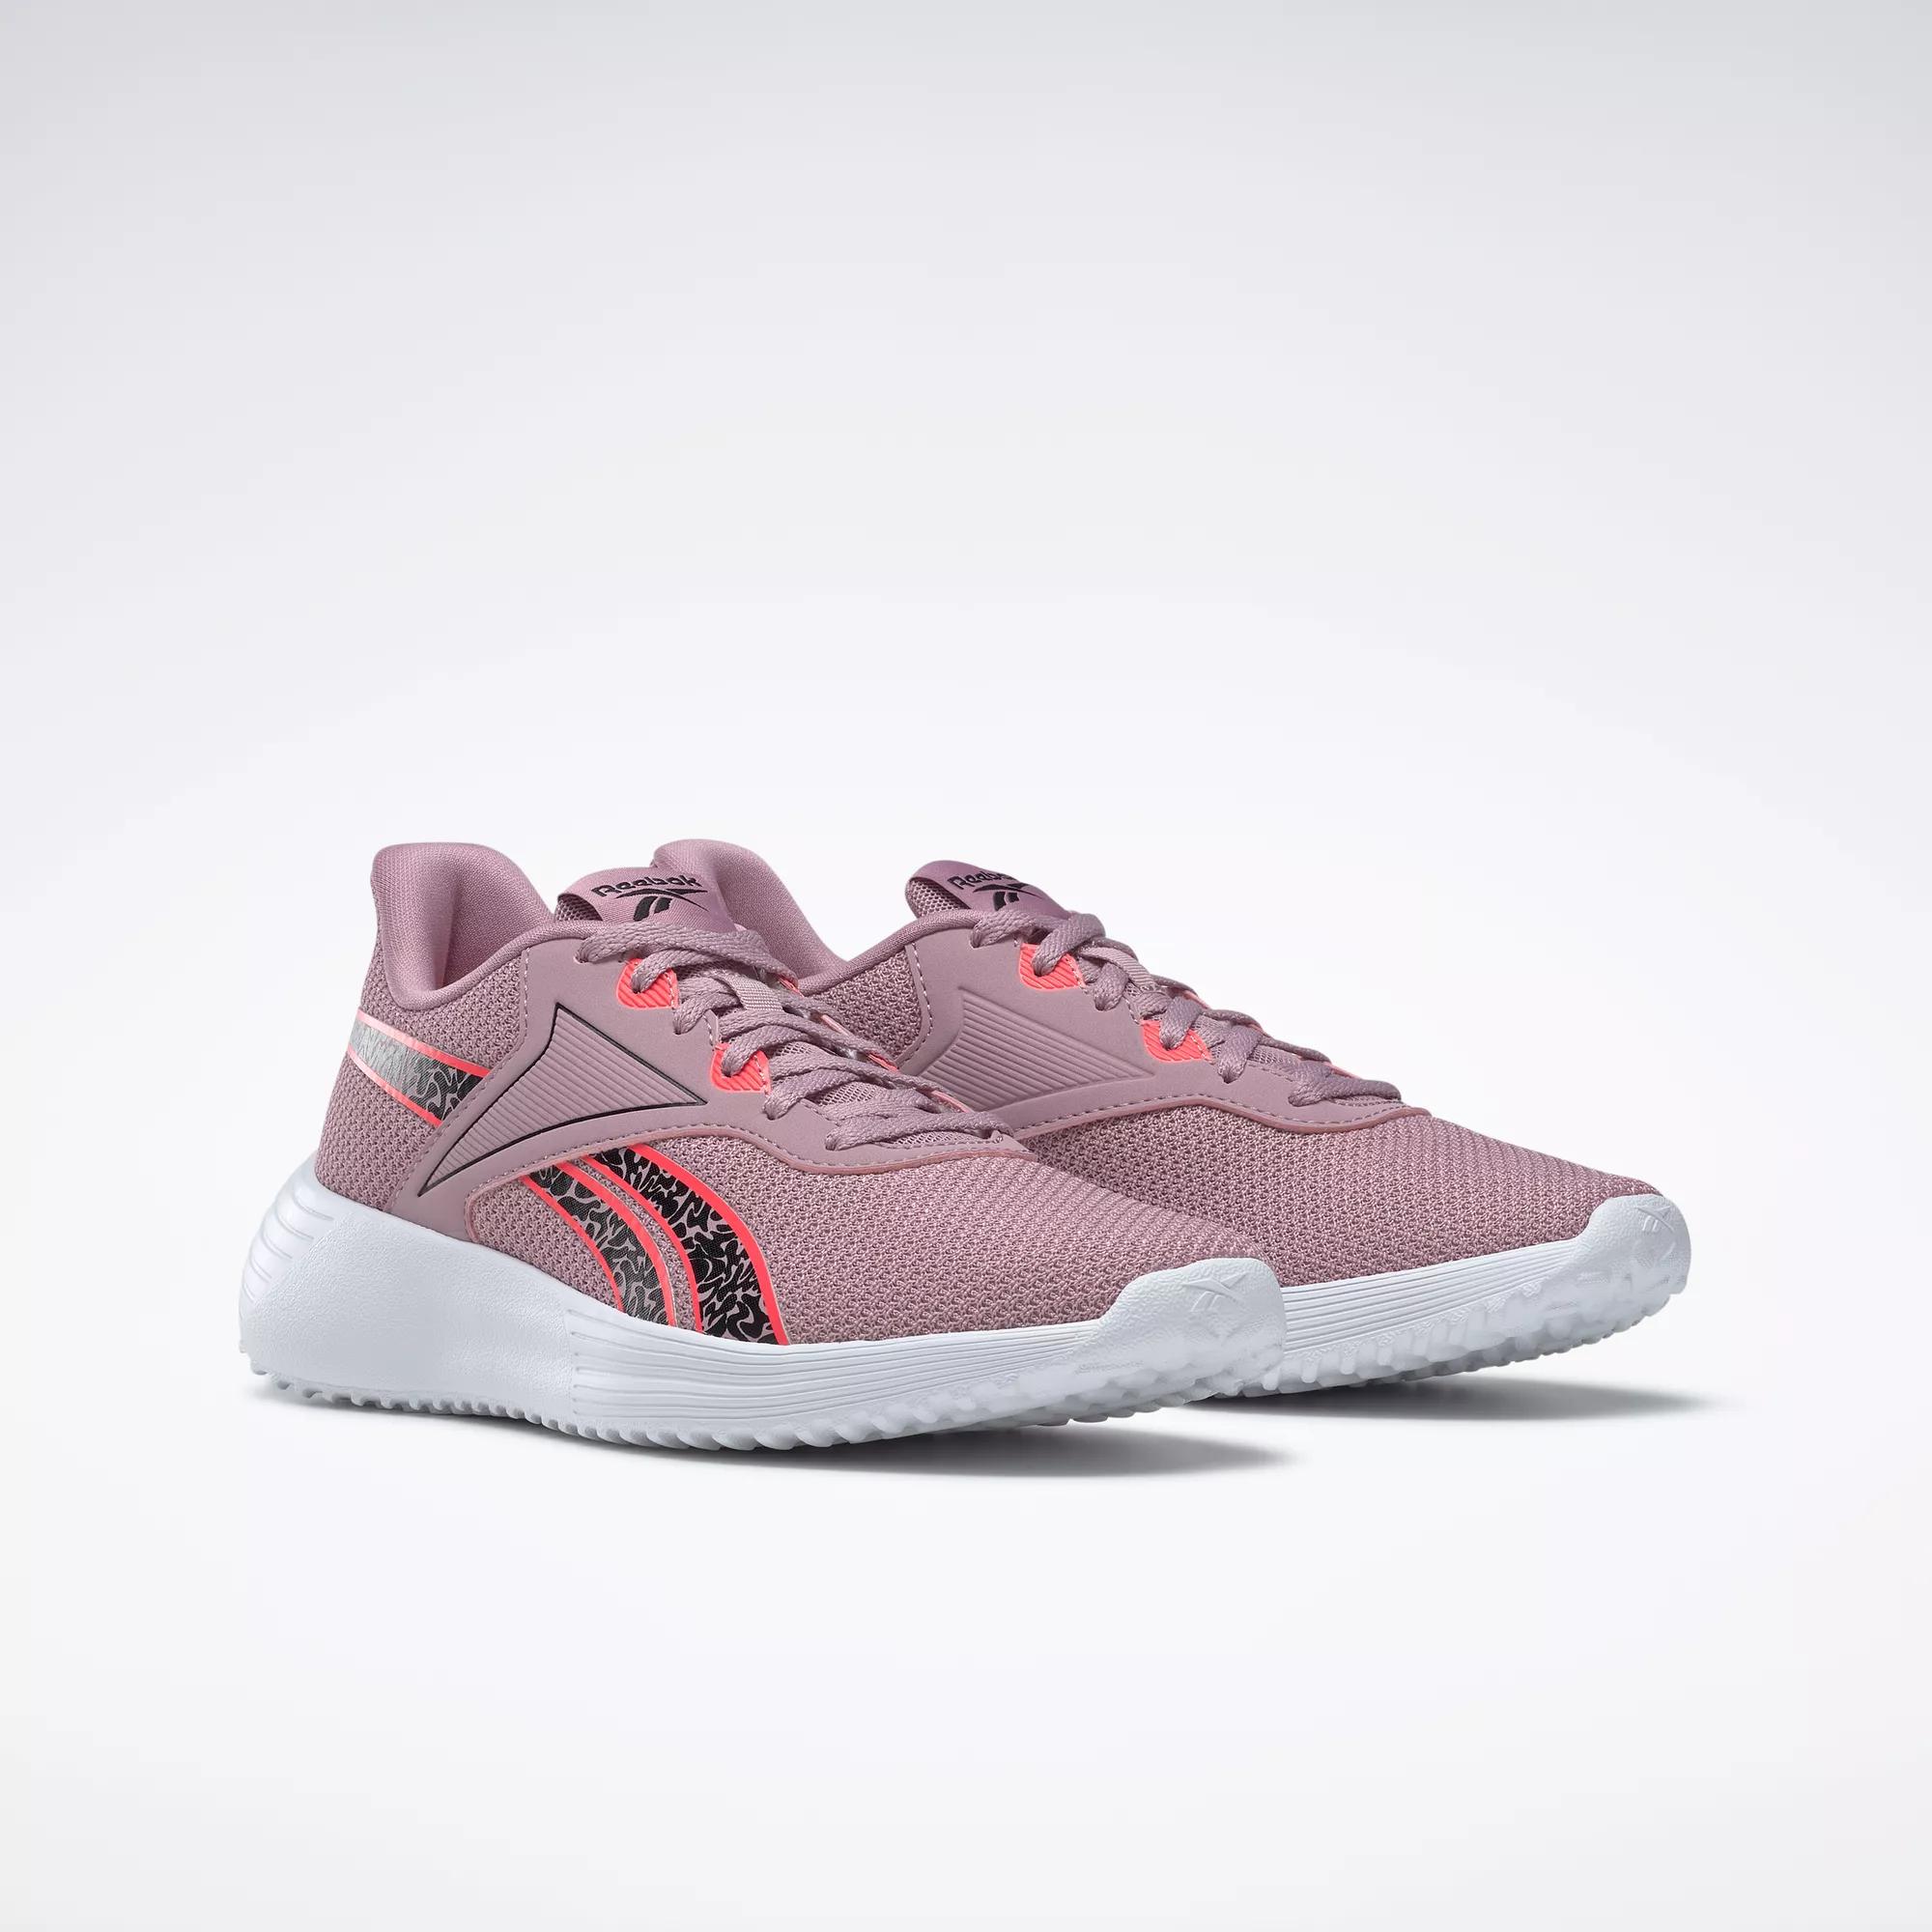 Reebok Women's Fluxlite Training Shoes in Pink - Size 8.5